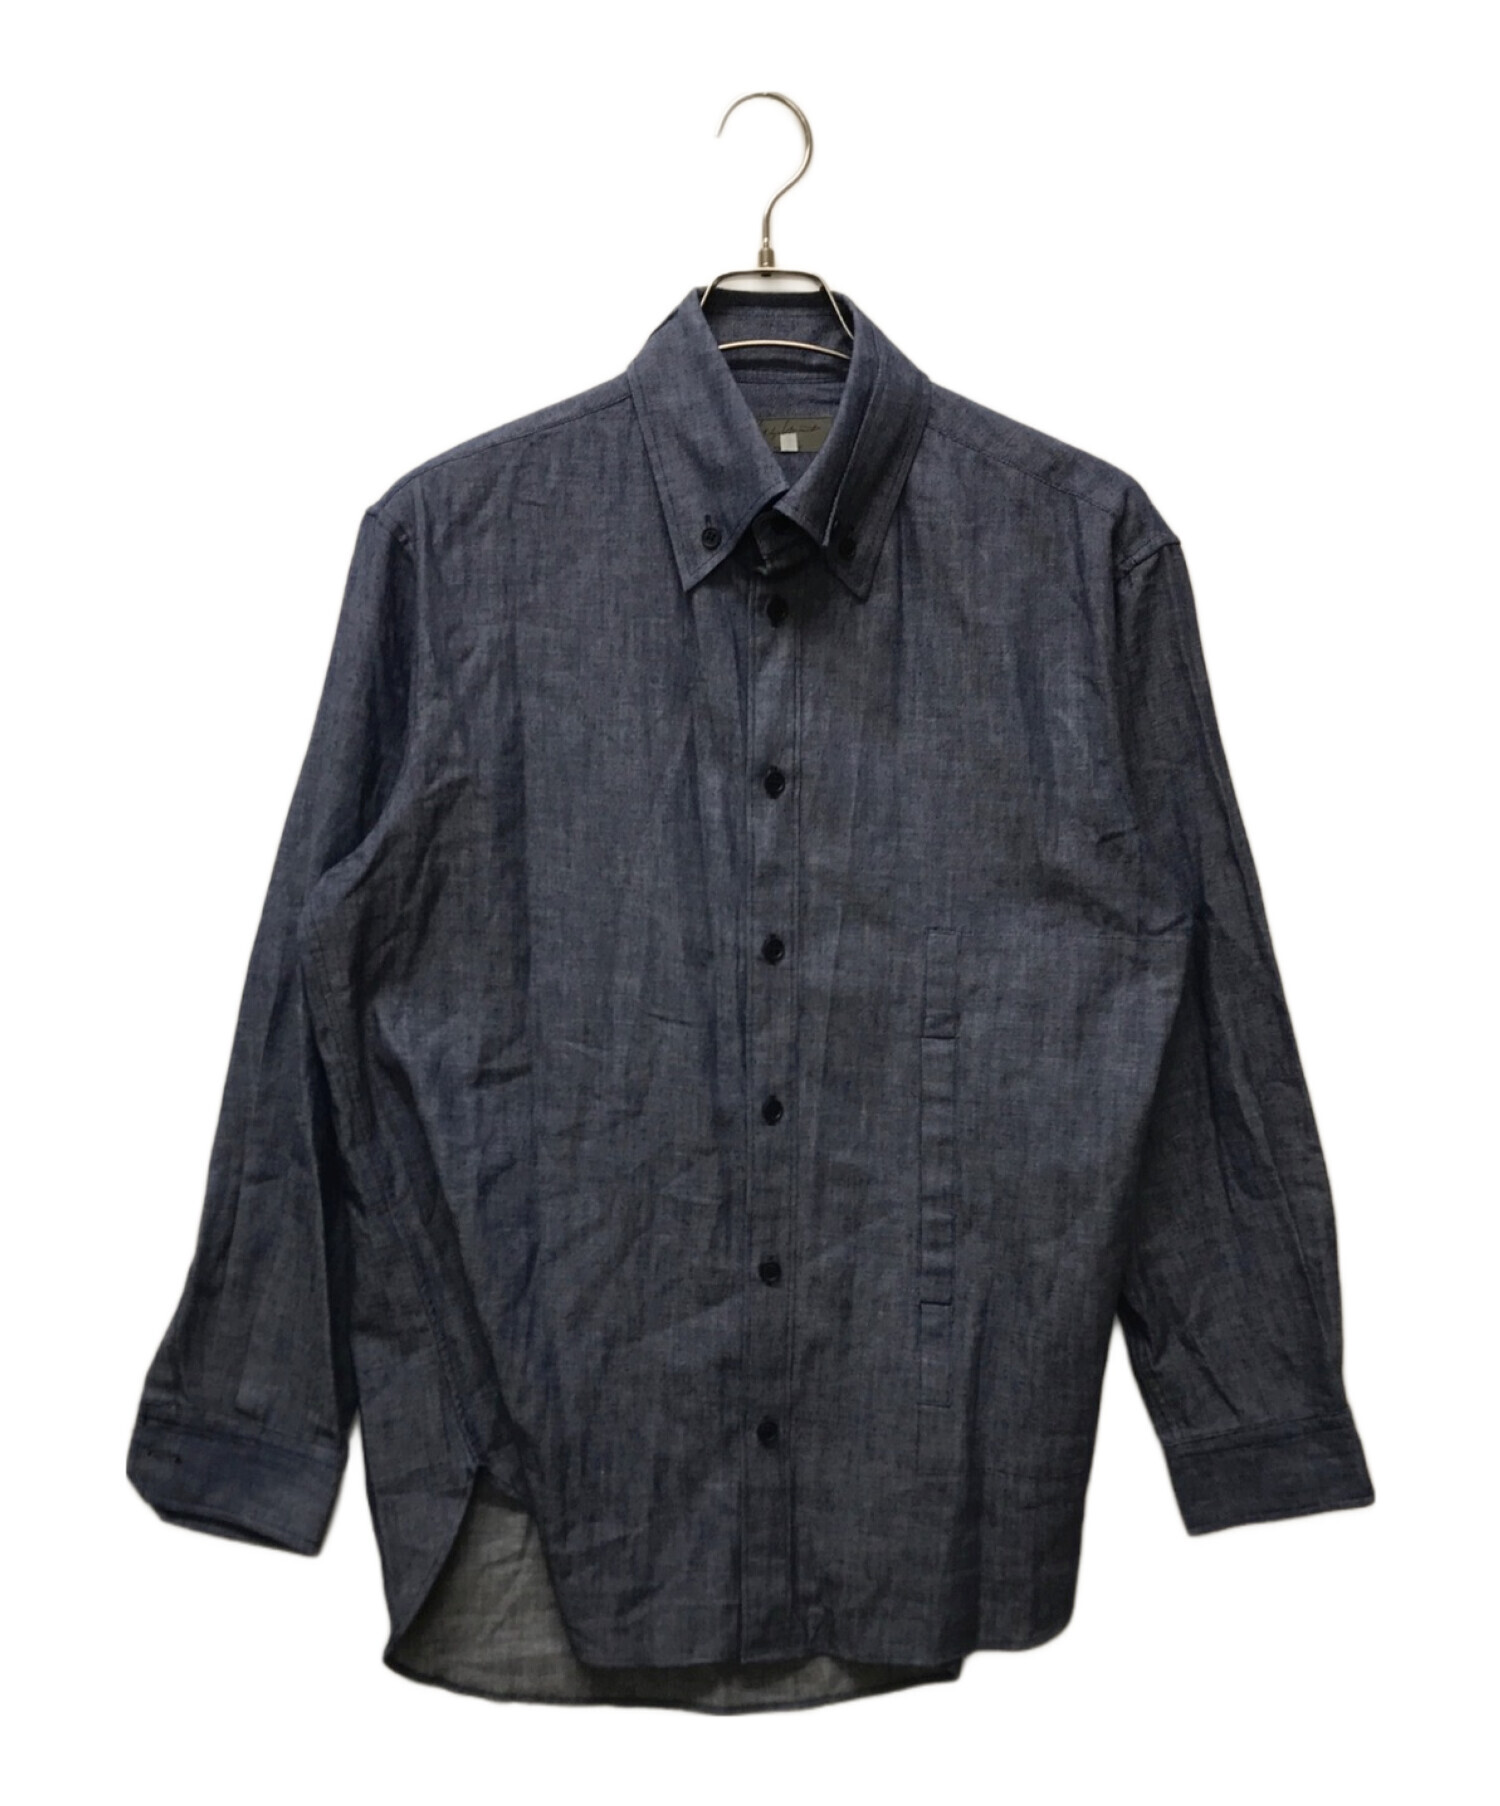 Yohji Yamamoto pour homme (ヨウジヤマモト プールオム) 二重襟ボタンダウンシャツ ブルー サイズ:34